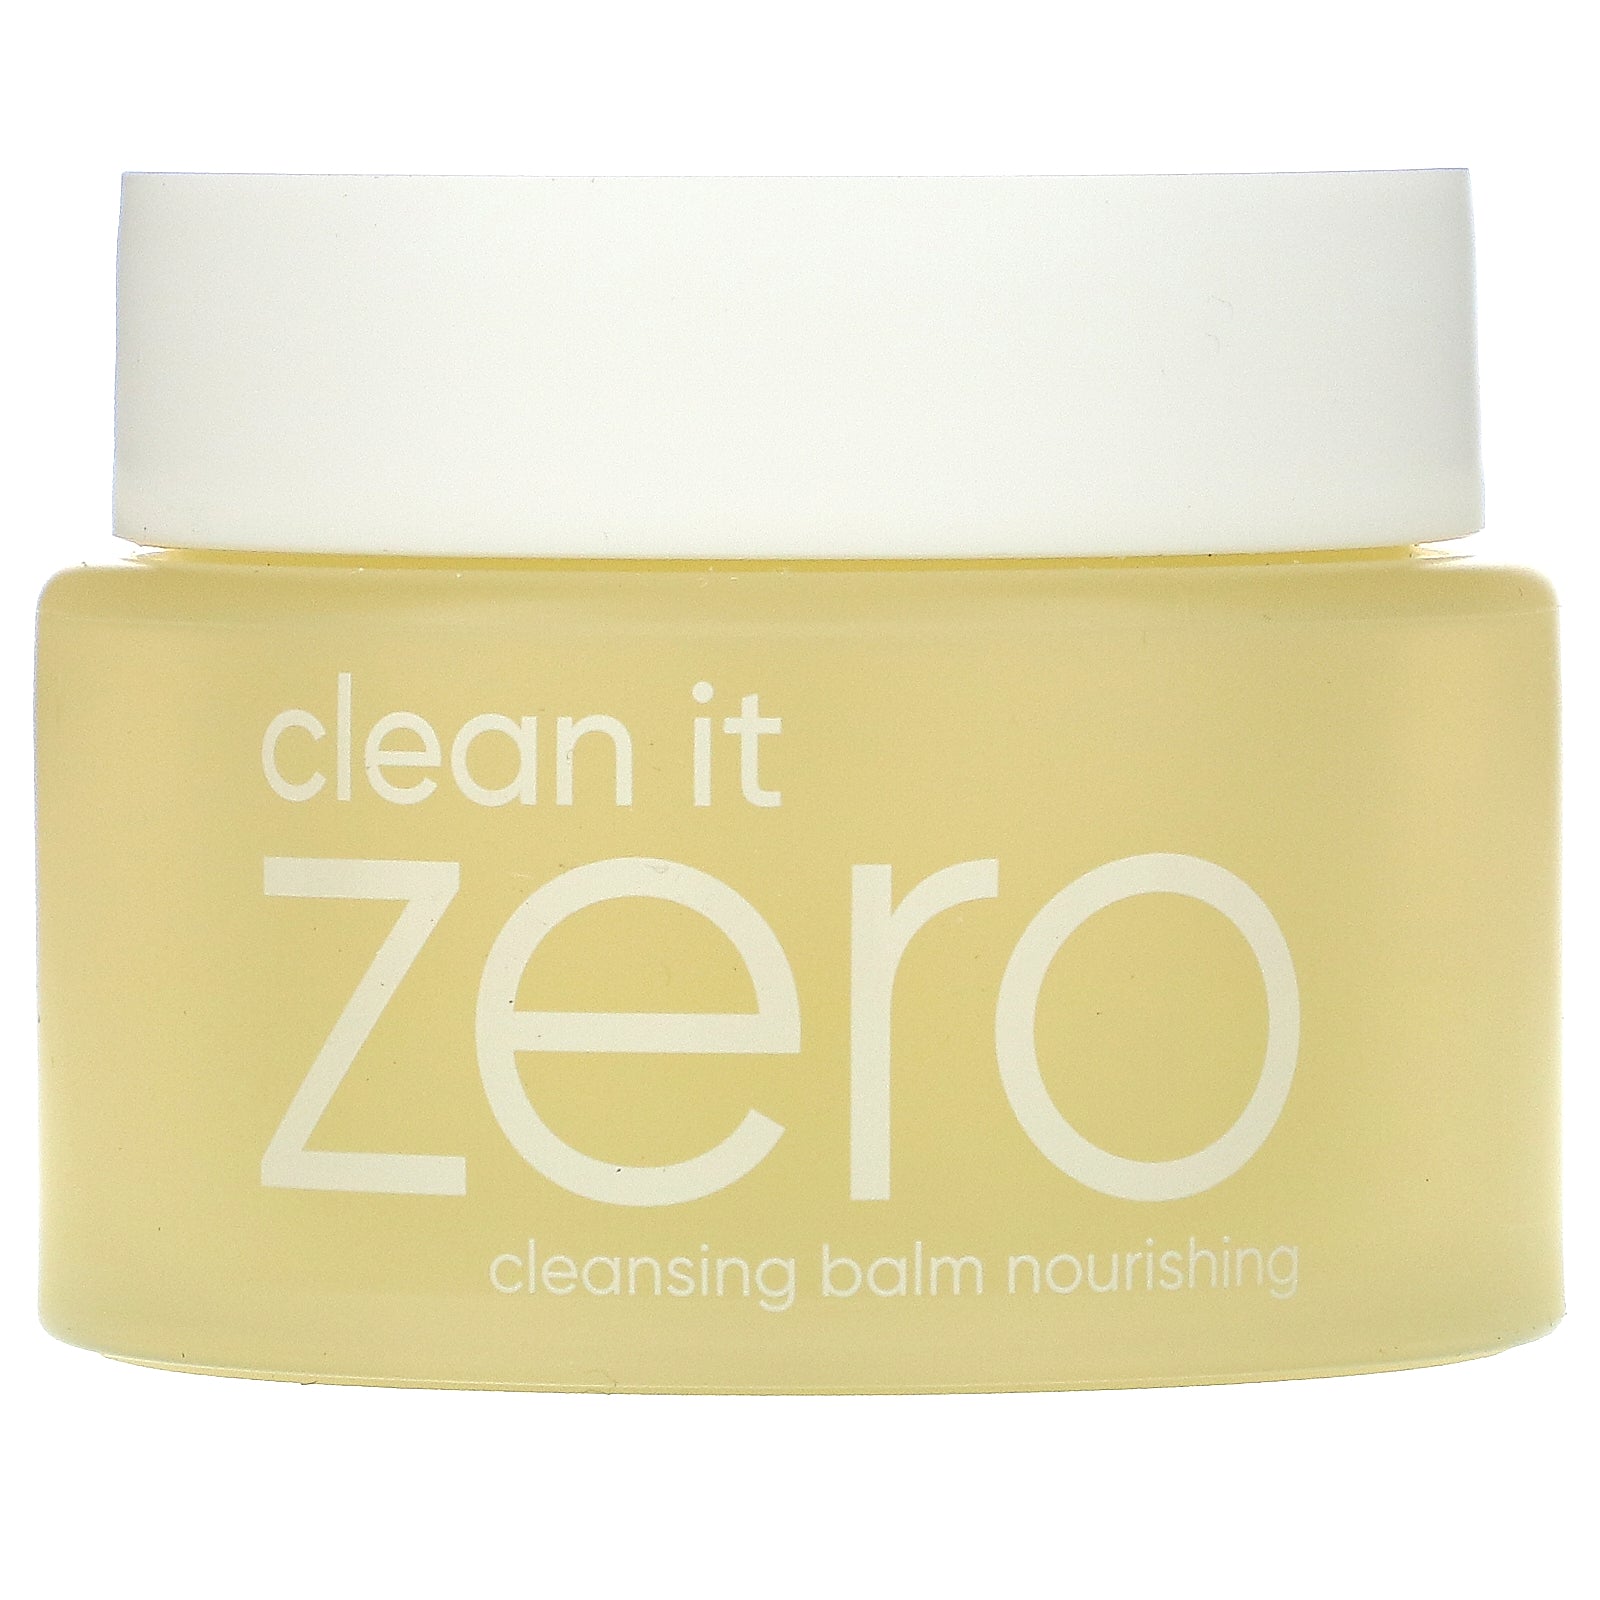 Banila Co., Clean It Zero, Cleansing Balm, 3.38 fl oz (100 ml)